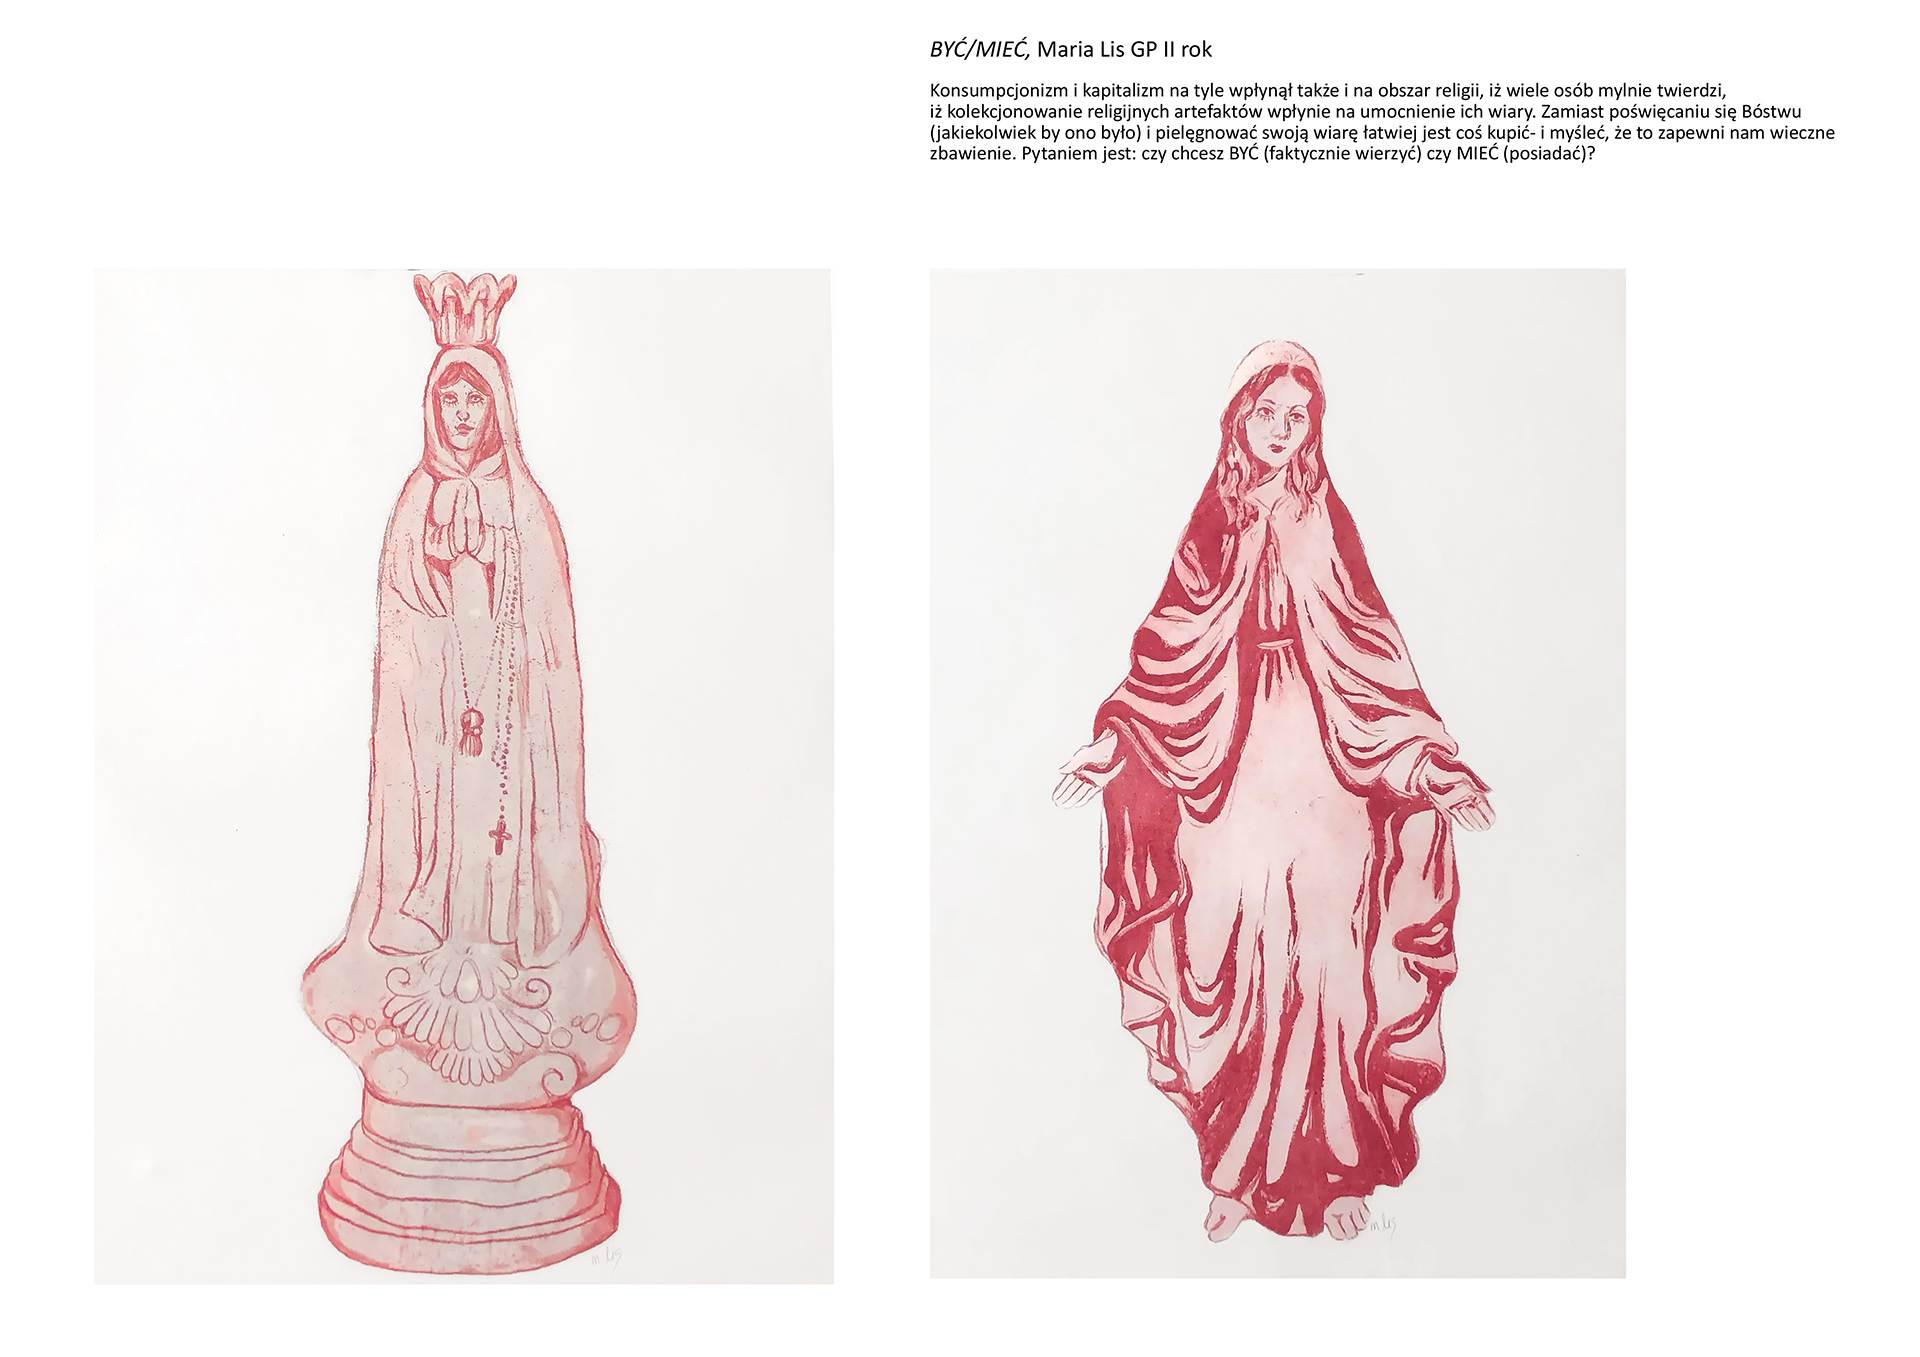 Tytuł: BYĆ/MIEĆ. Autorka: Maria Lis. Dwie grafiki w odcieniach różu. Lewa przedstawia figurkę Matki Boskiej Częstochowskiej, lewa przedstawia postać Maryi Fatimskiej z rozłożonymi dłońmi.